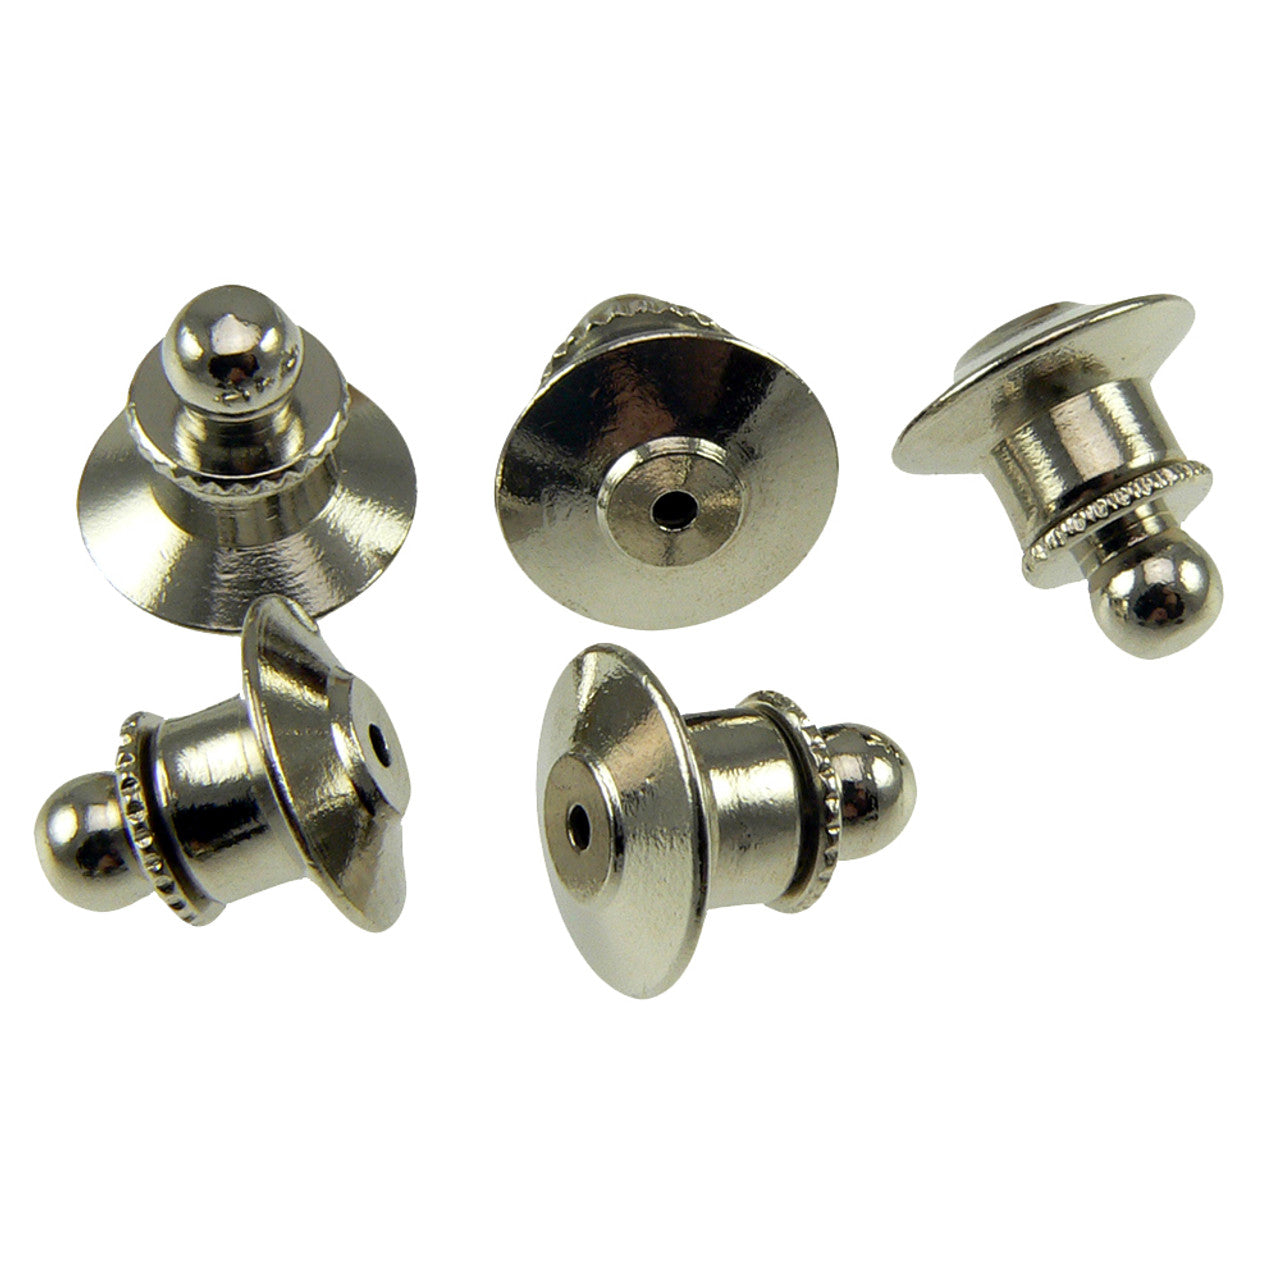 2 Locking Clutch Pin Backings – Retrophiliac